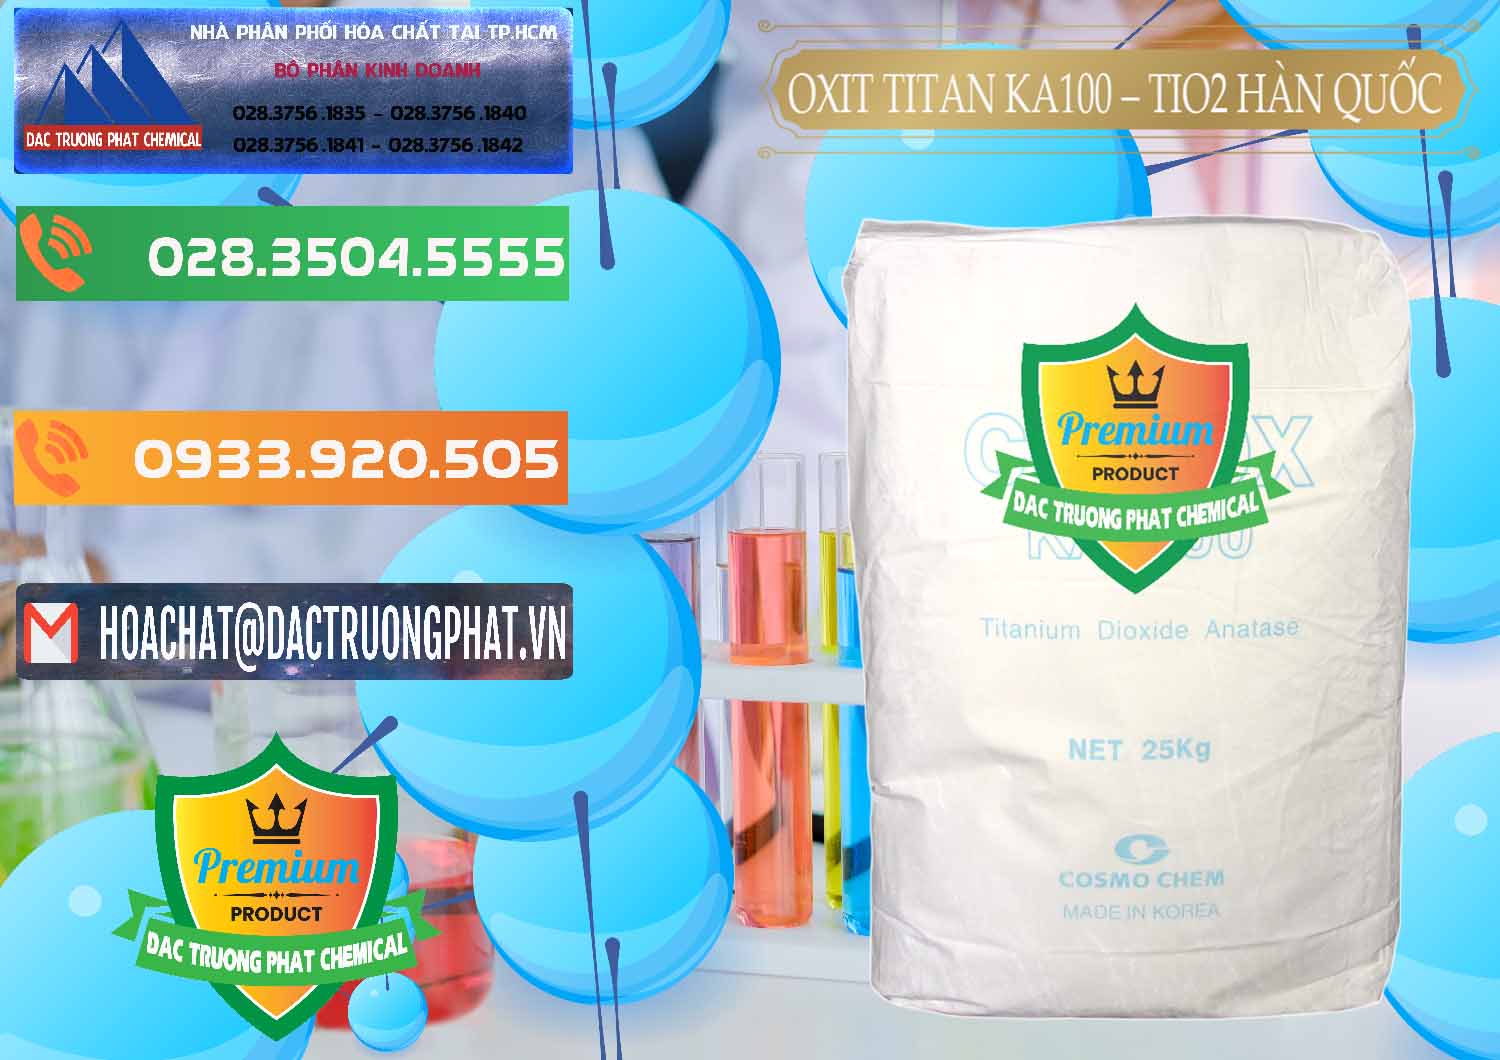 Cty chuyên cung cấp - bán Oxit Titan KA100 – Tio2 Hàn Quốc Korea - 0107 - Nơi chuyên cung cấp _ kinh doanh hóa chất tại TP.HCM - hoachatxulynuoc.com.vn